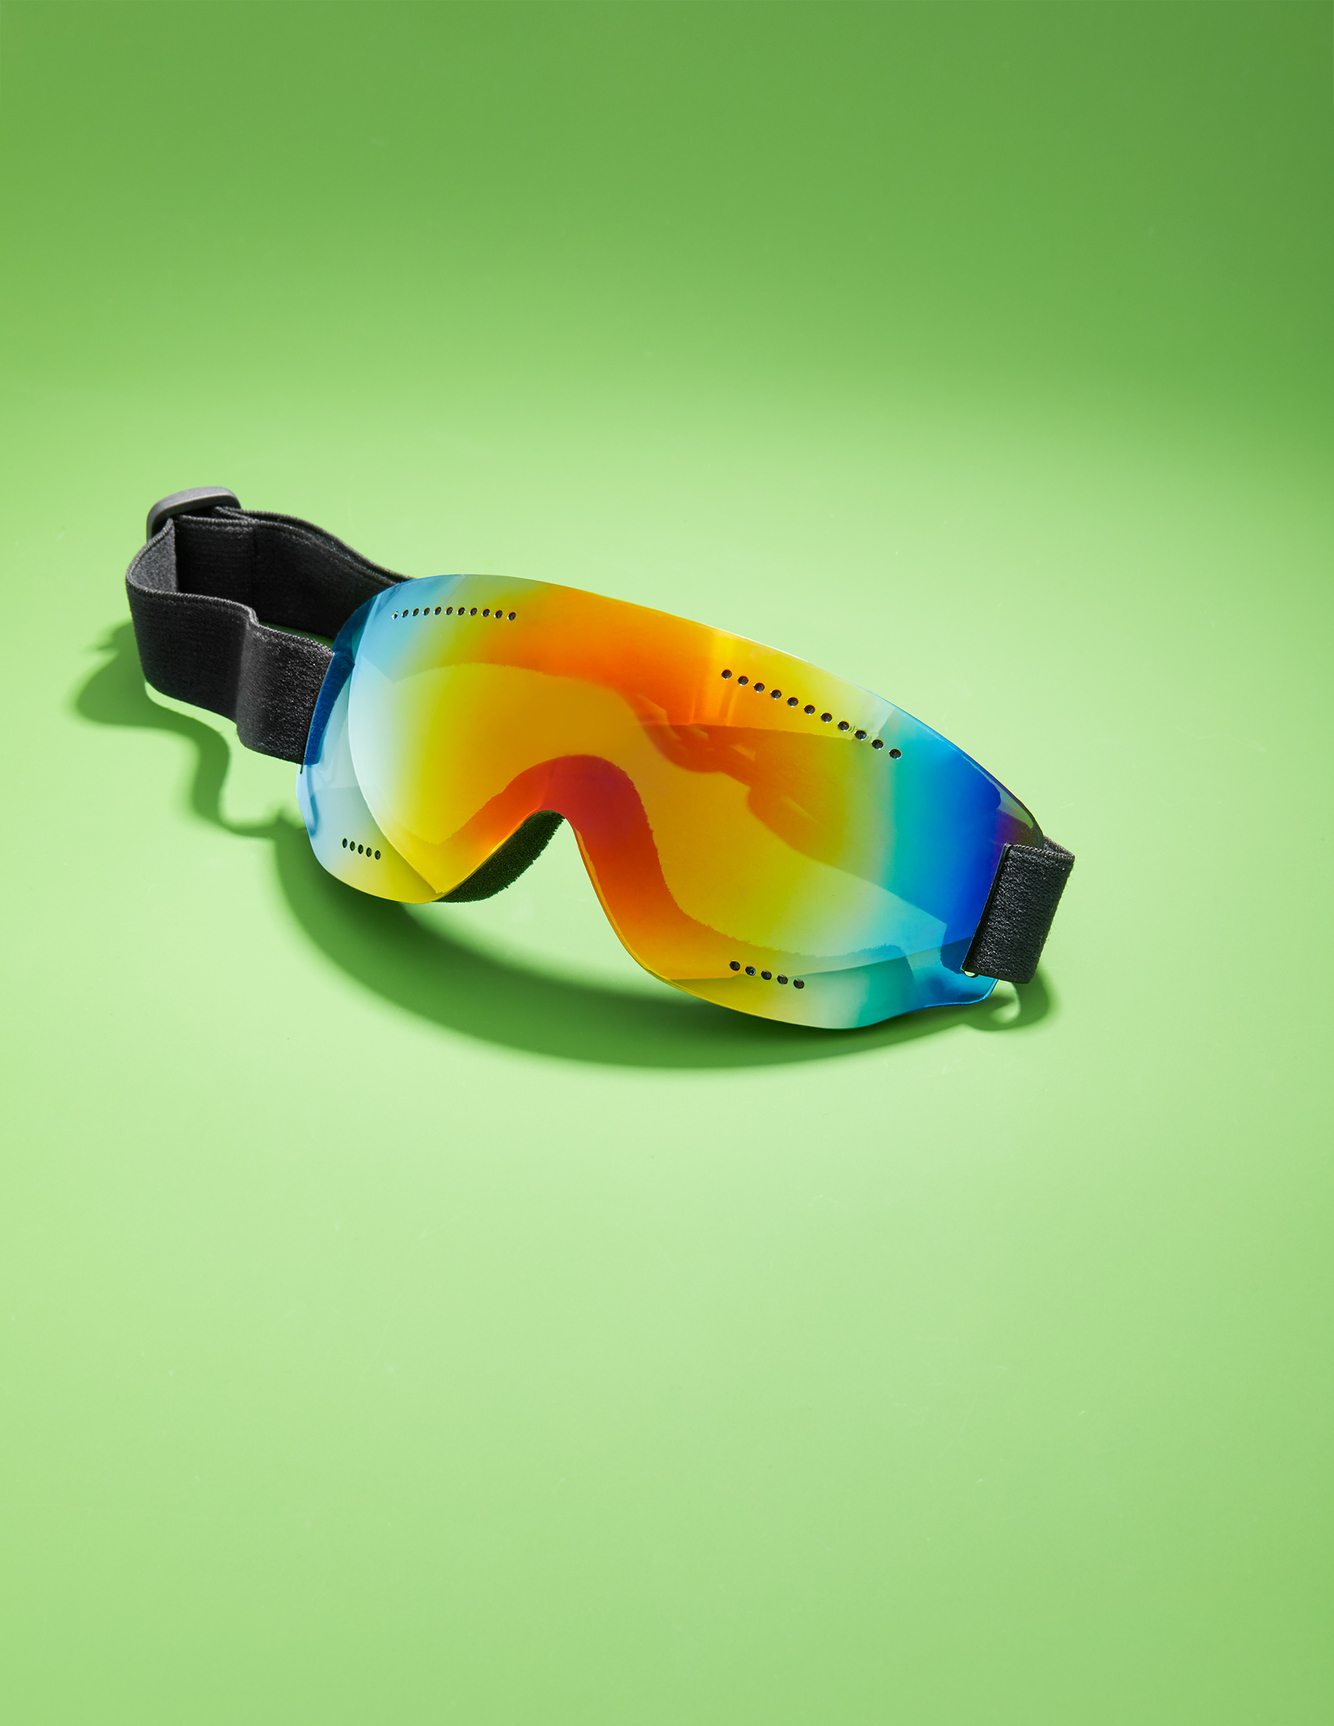 Translucent multicolored goggles 